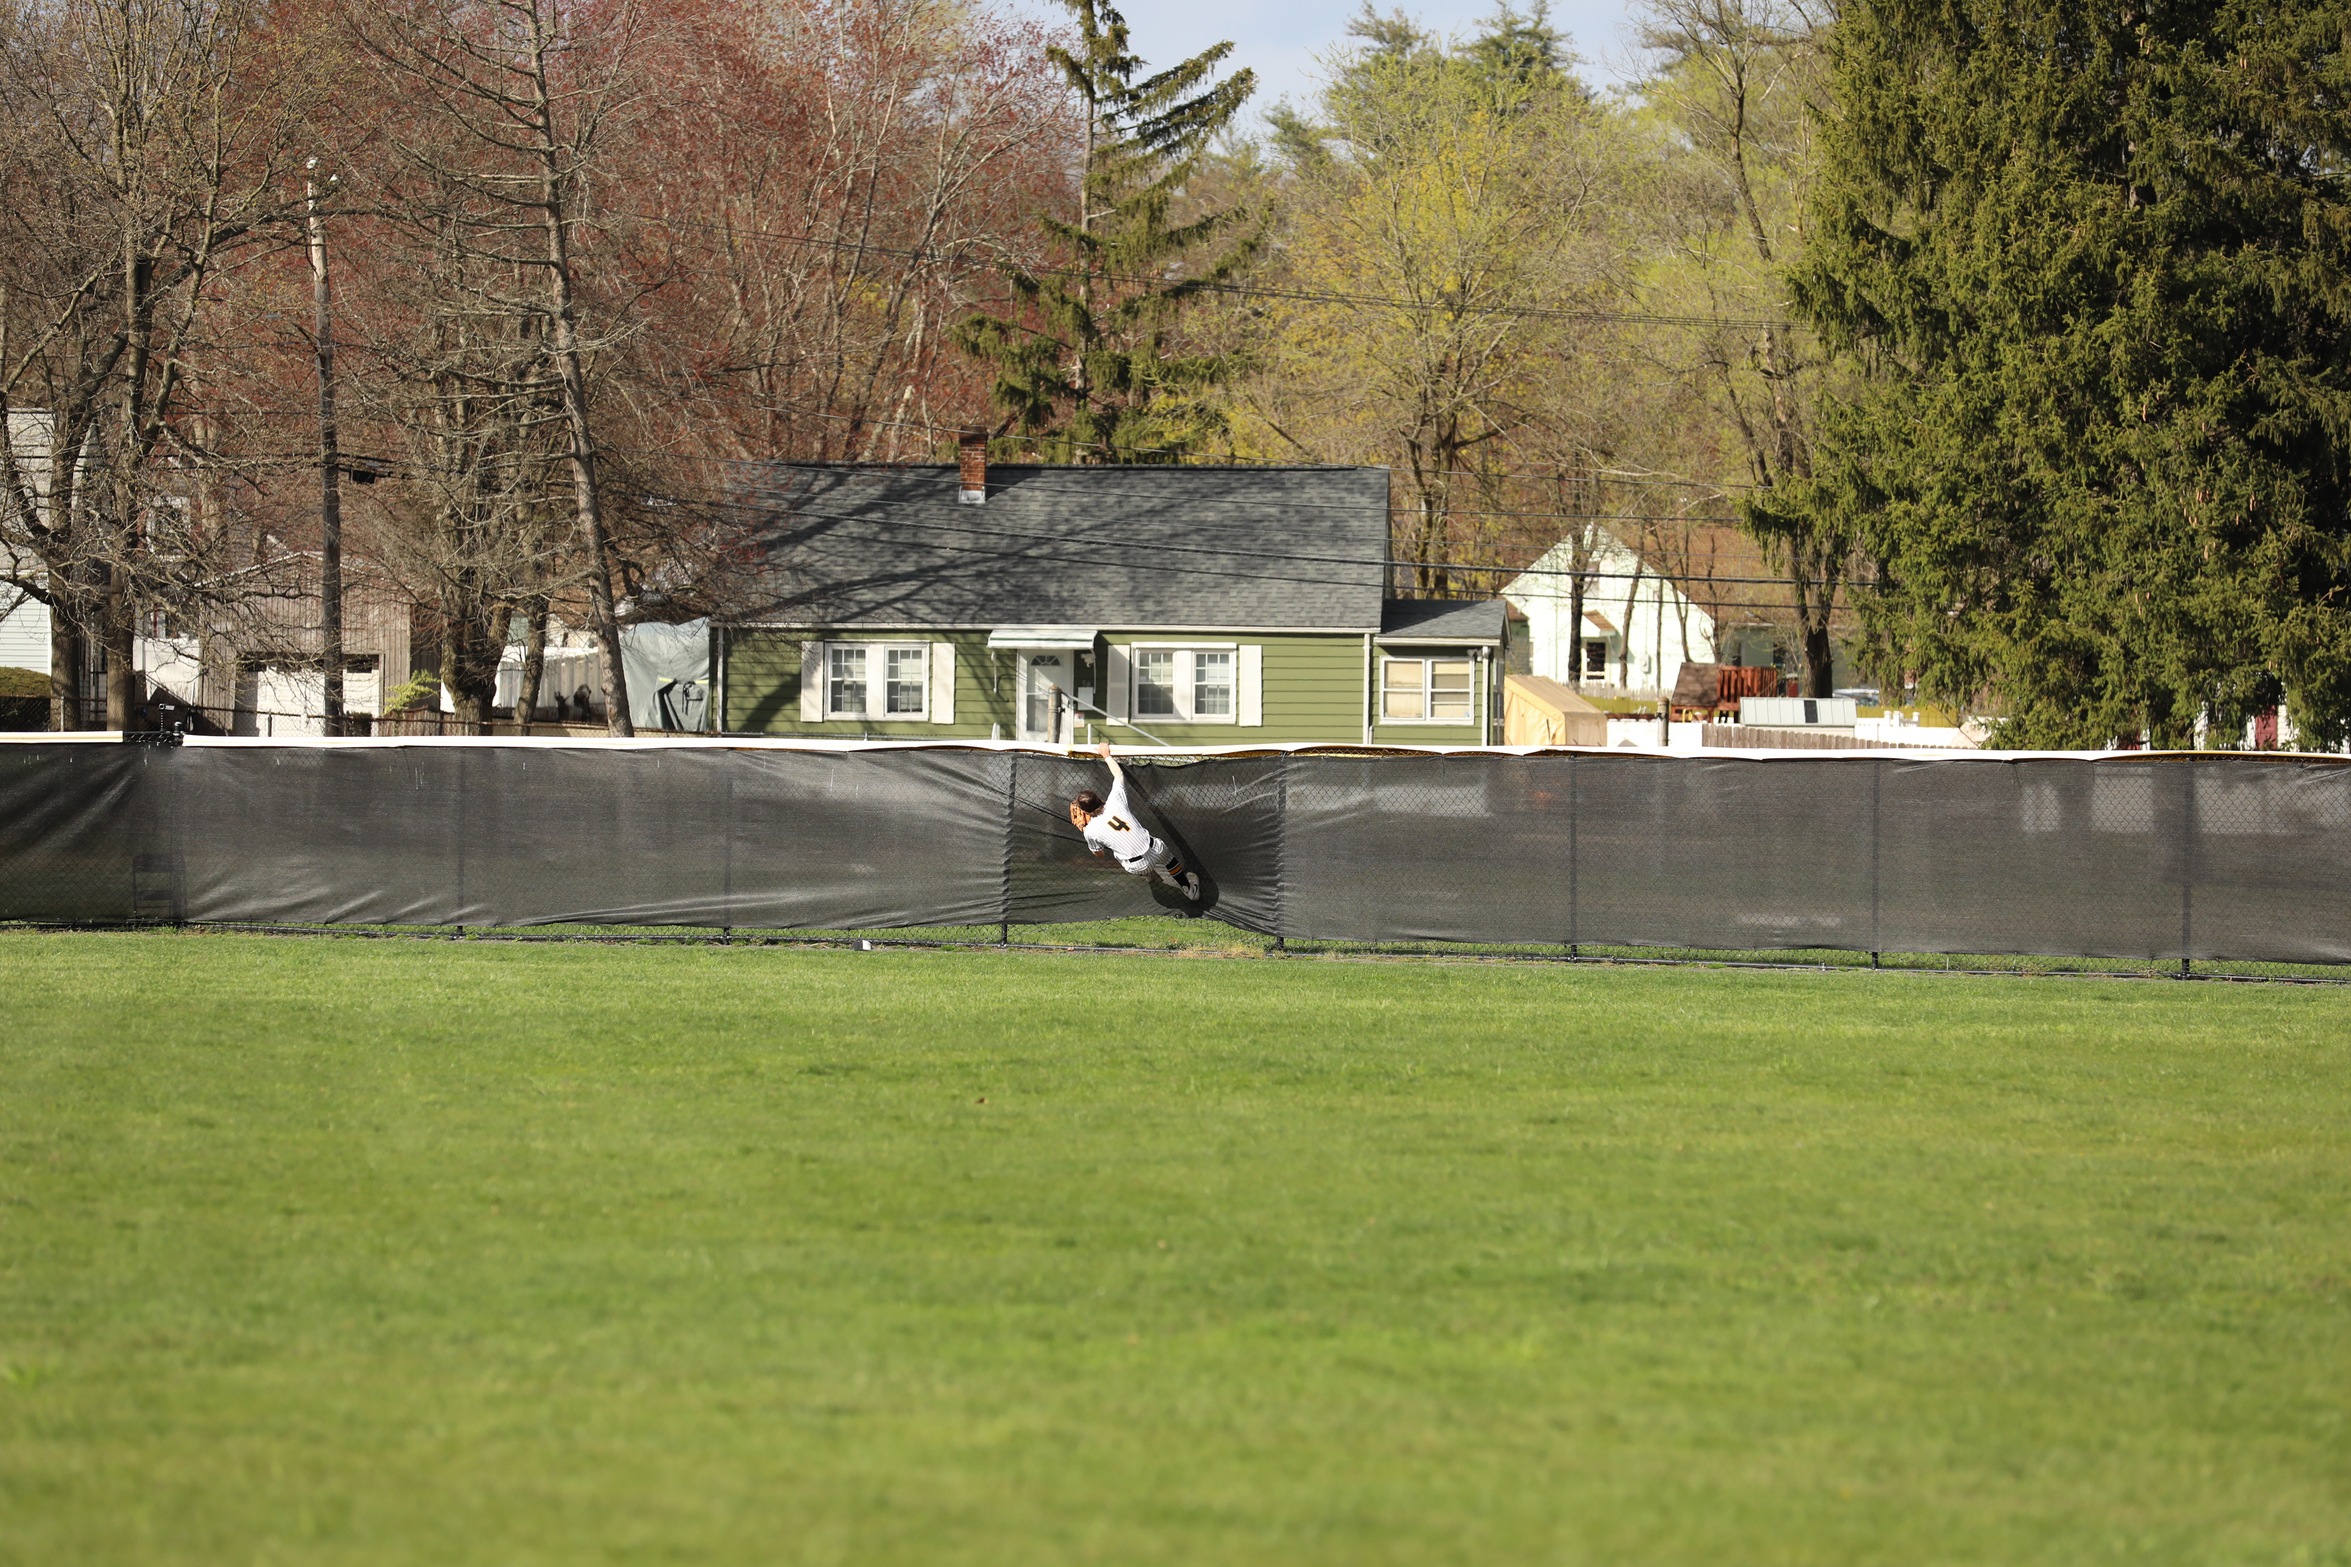 Ravens pitch past Baseball